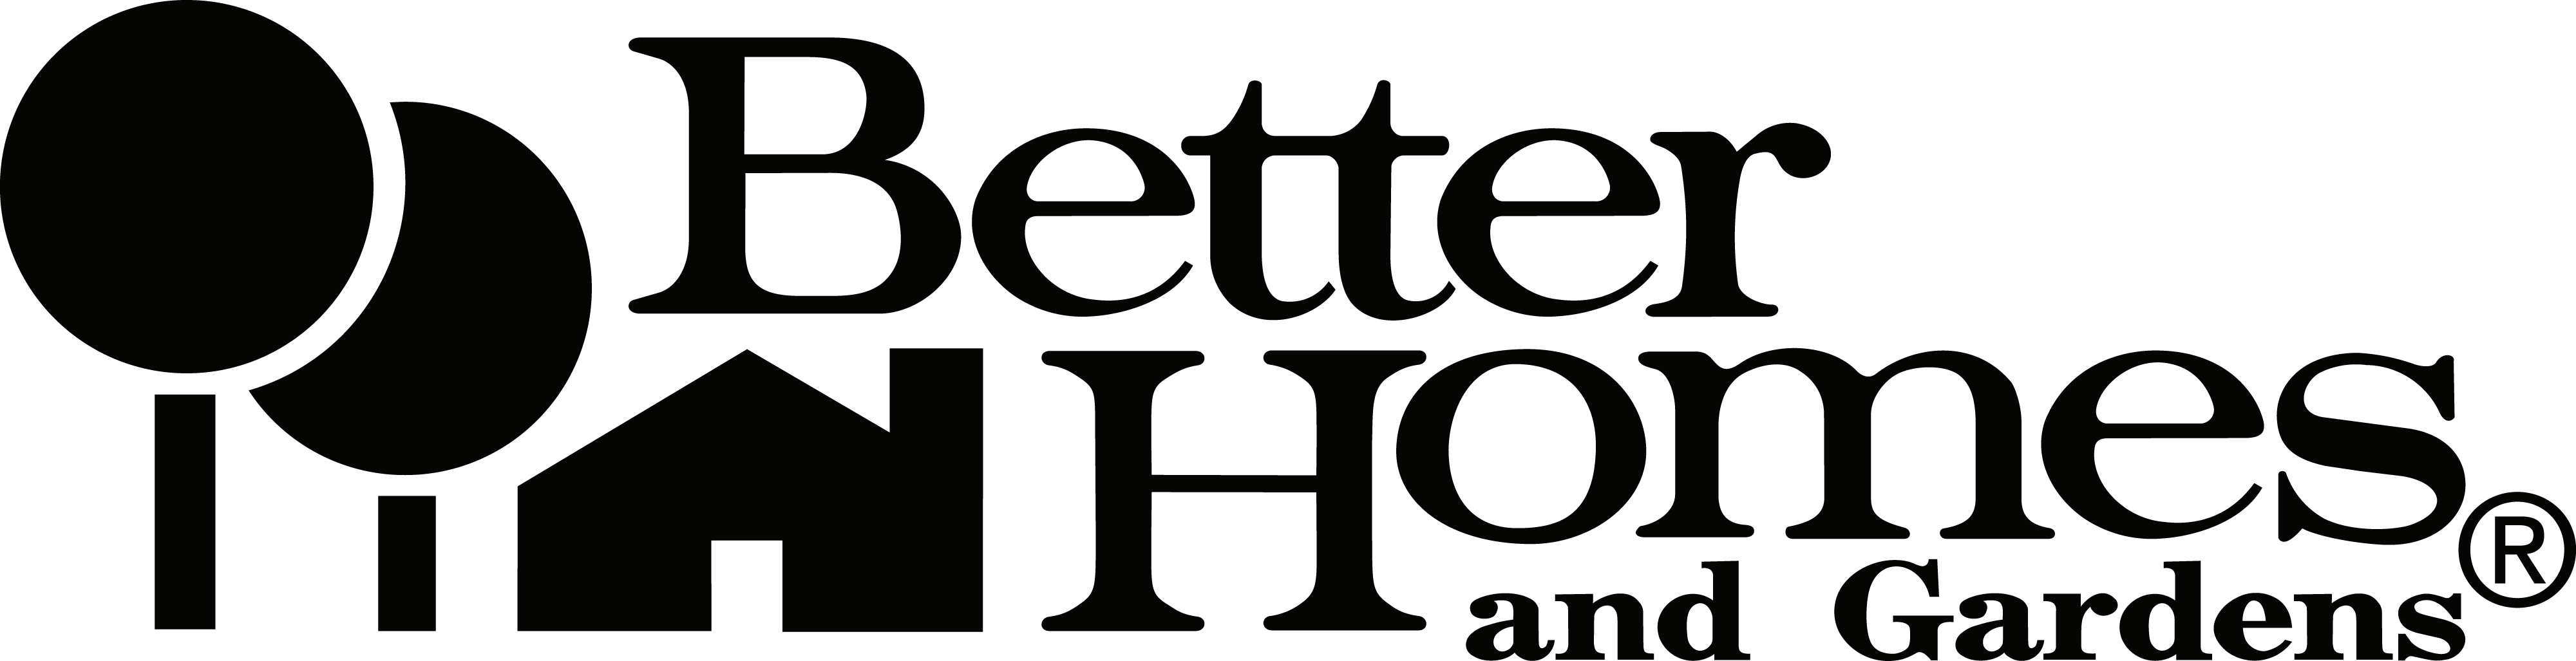 Better homes com. Better логотип. Агентство better лого. Best Home логотип. Home Garden logo.